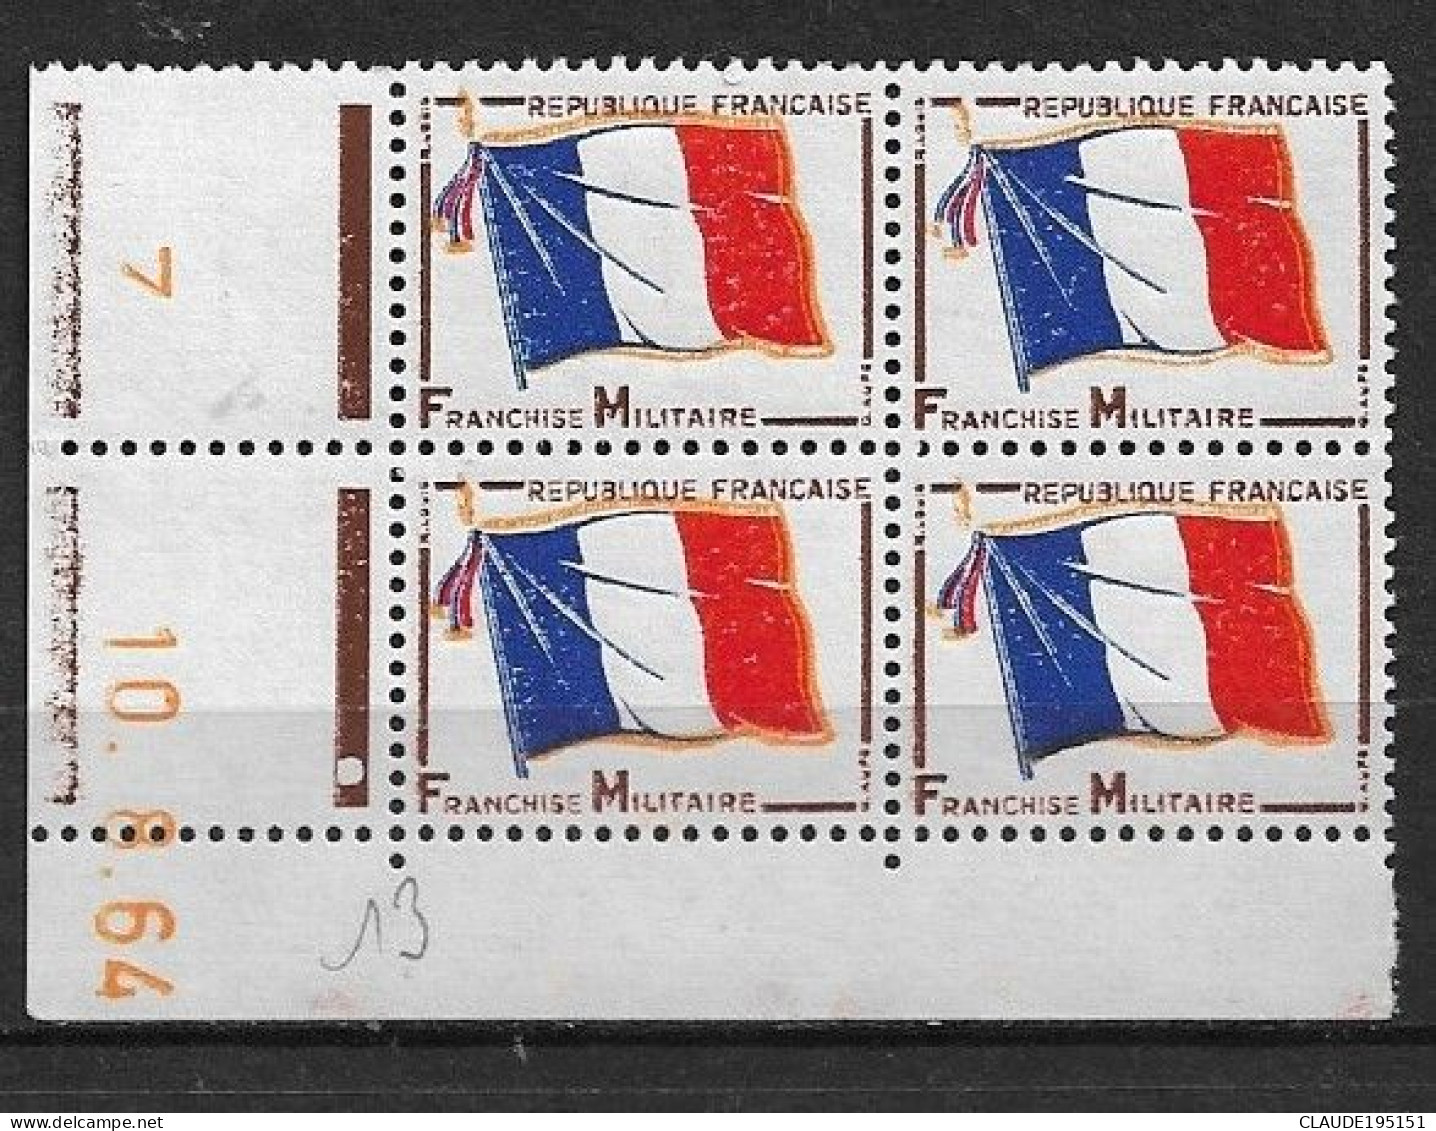 FRANCE 1964  F.M   N° 13**  10.8.64 COIN DATE GOMME D'ORIGINE SANS CHARNIÈRE  NEUF TTB      2 SCANS - 1960-1969